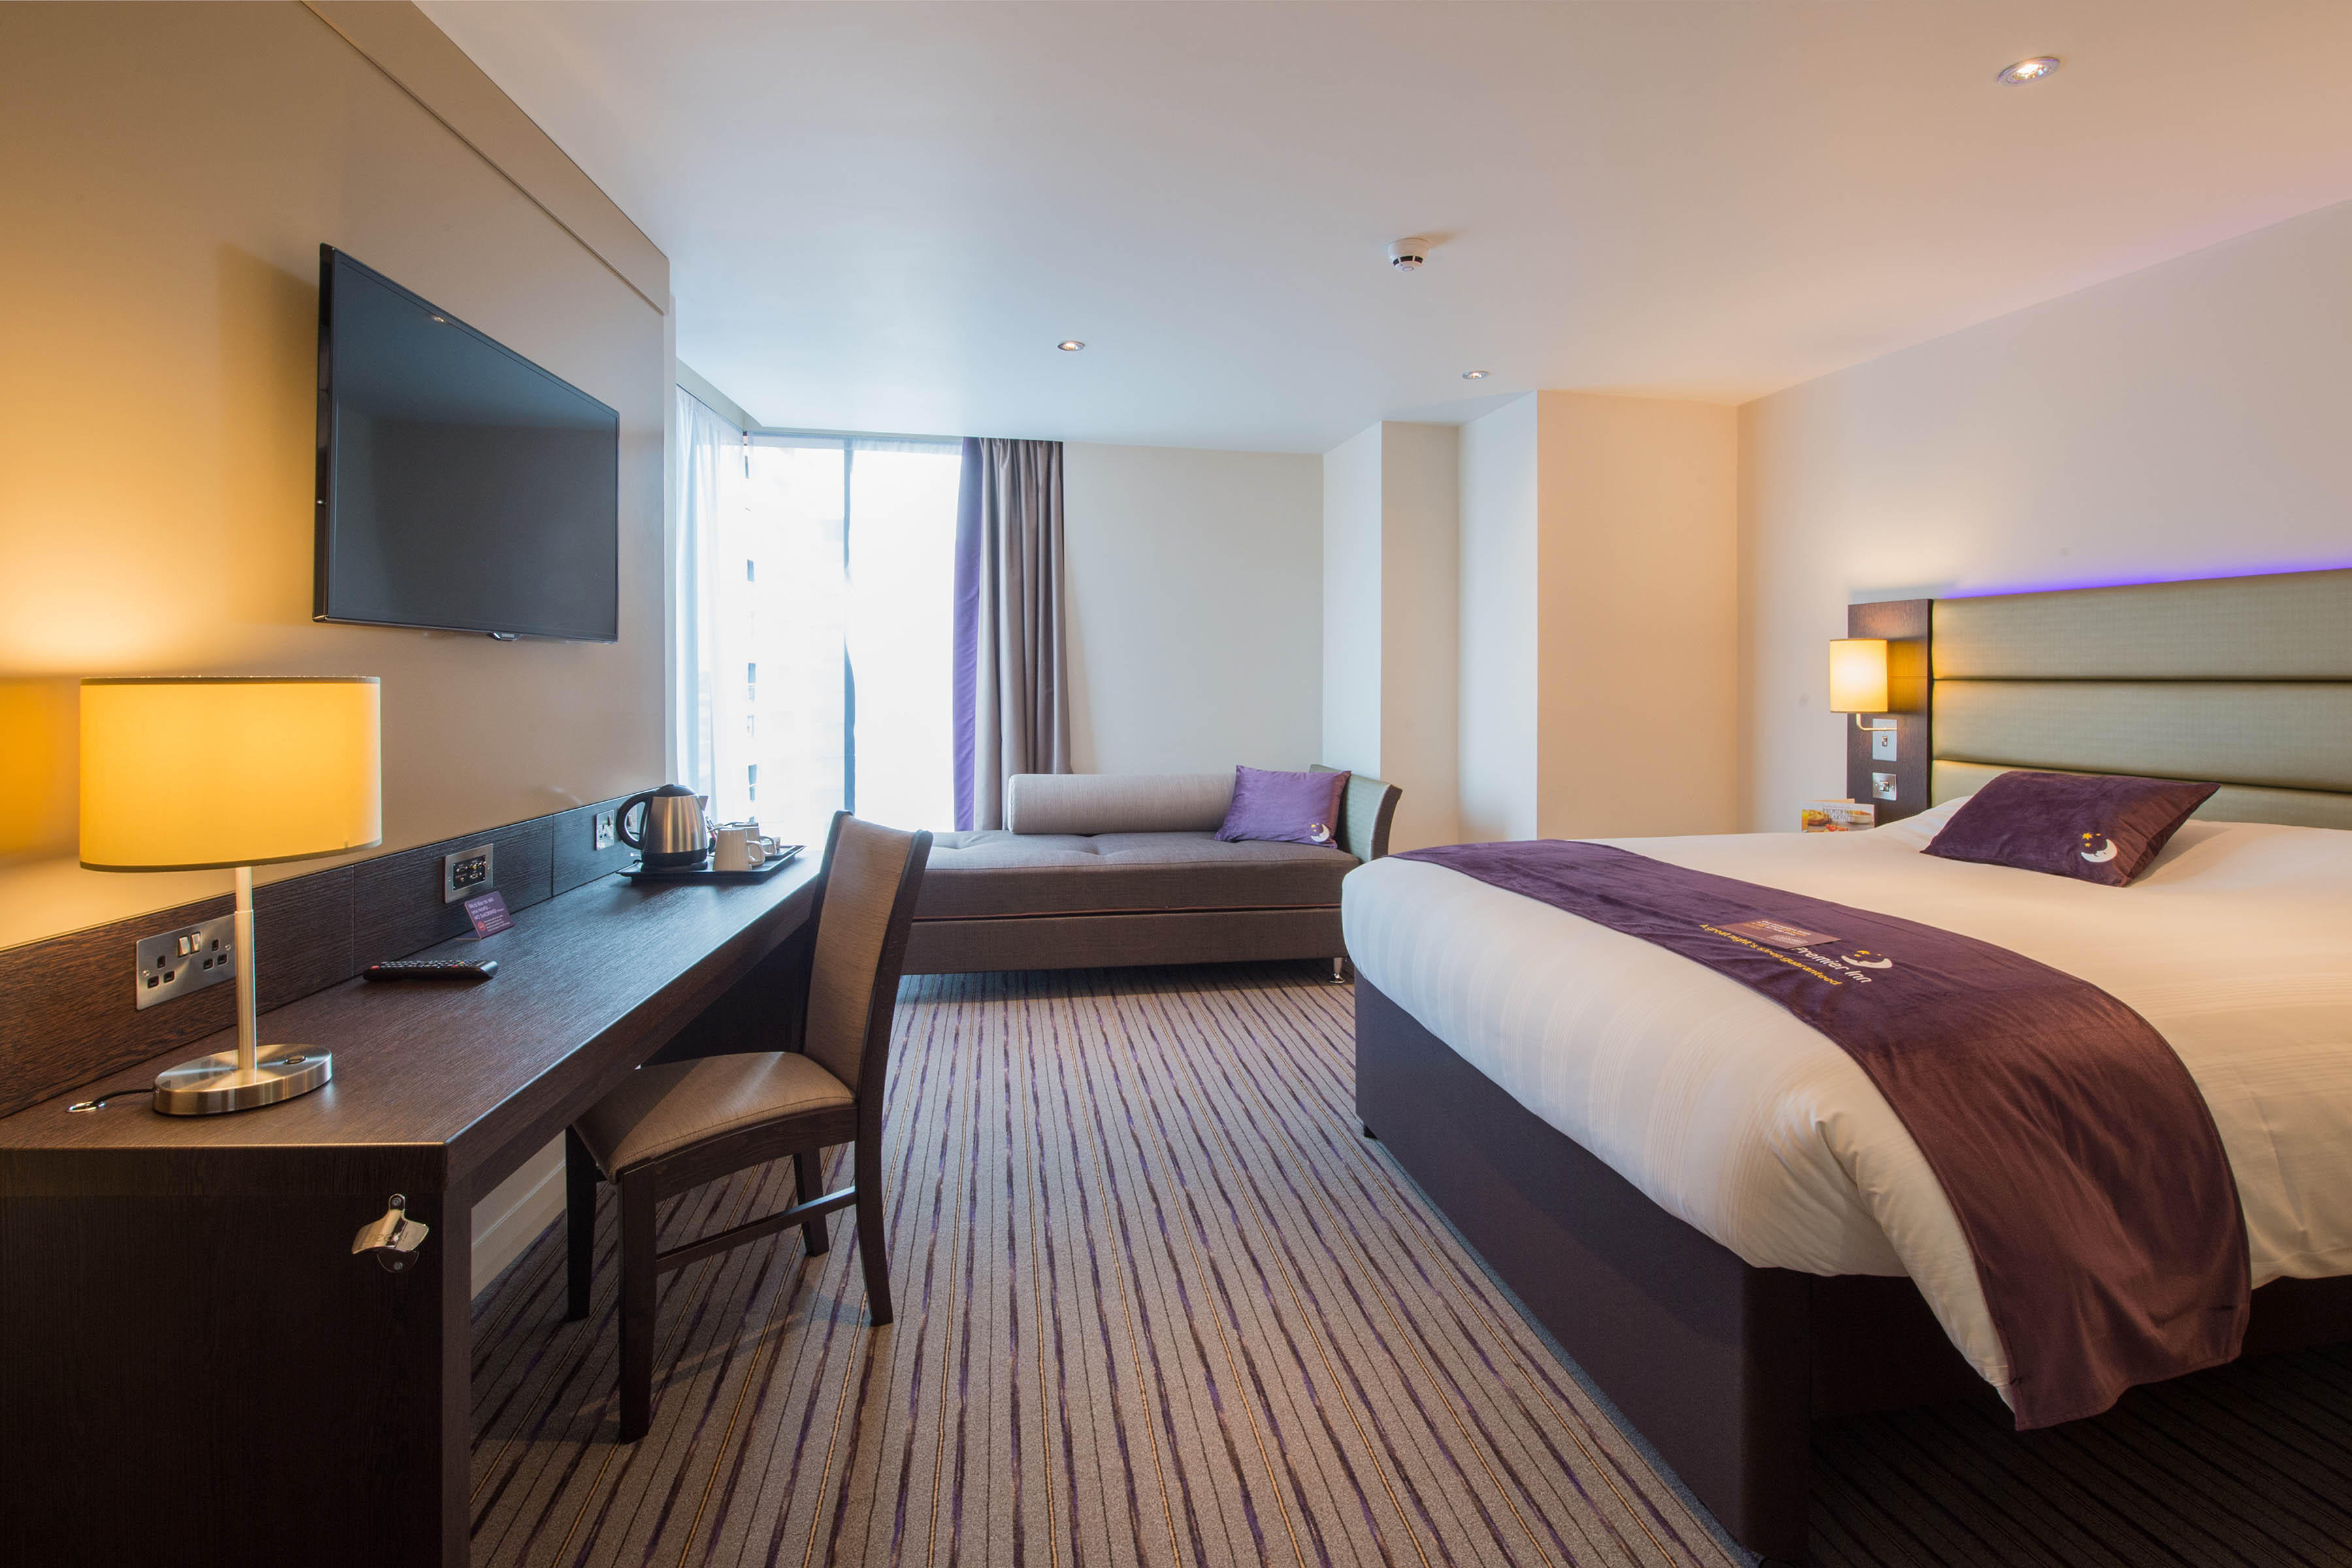 Premier Inn bedroom Premier Inn Manchester City Centre West hotel Salford 03333 219367